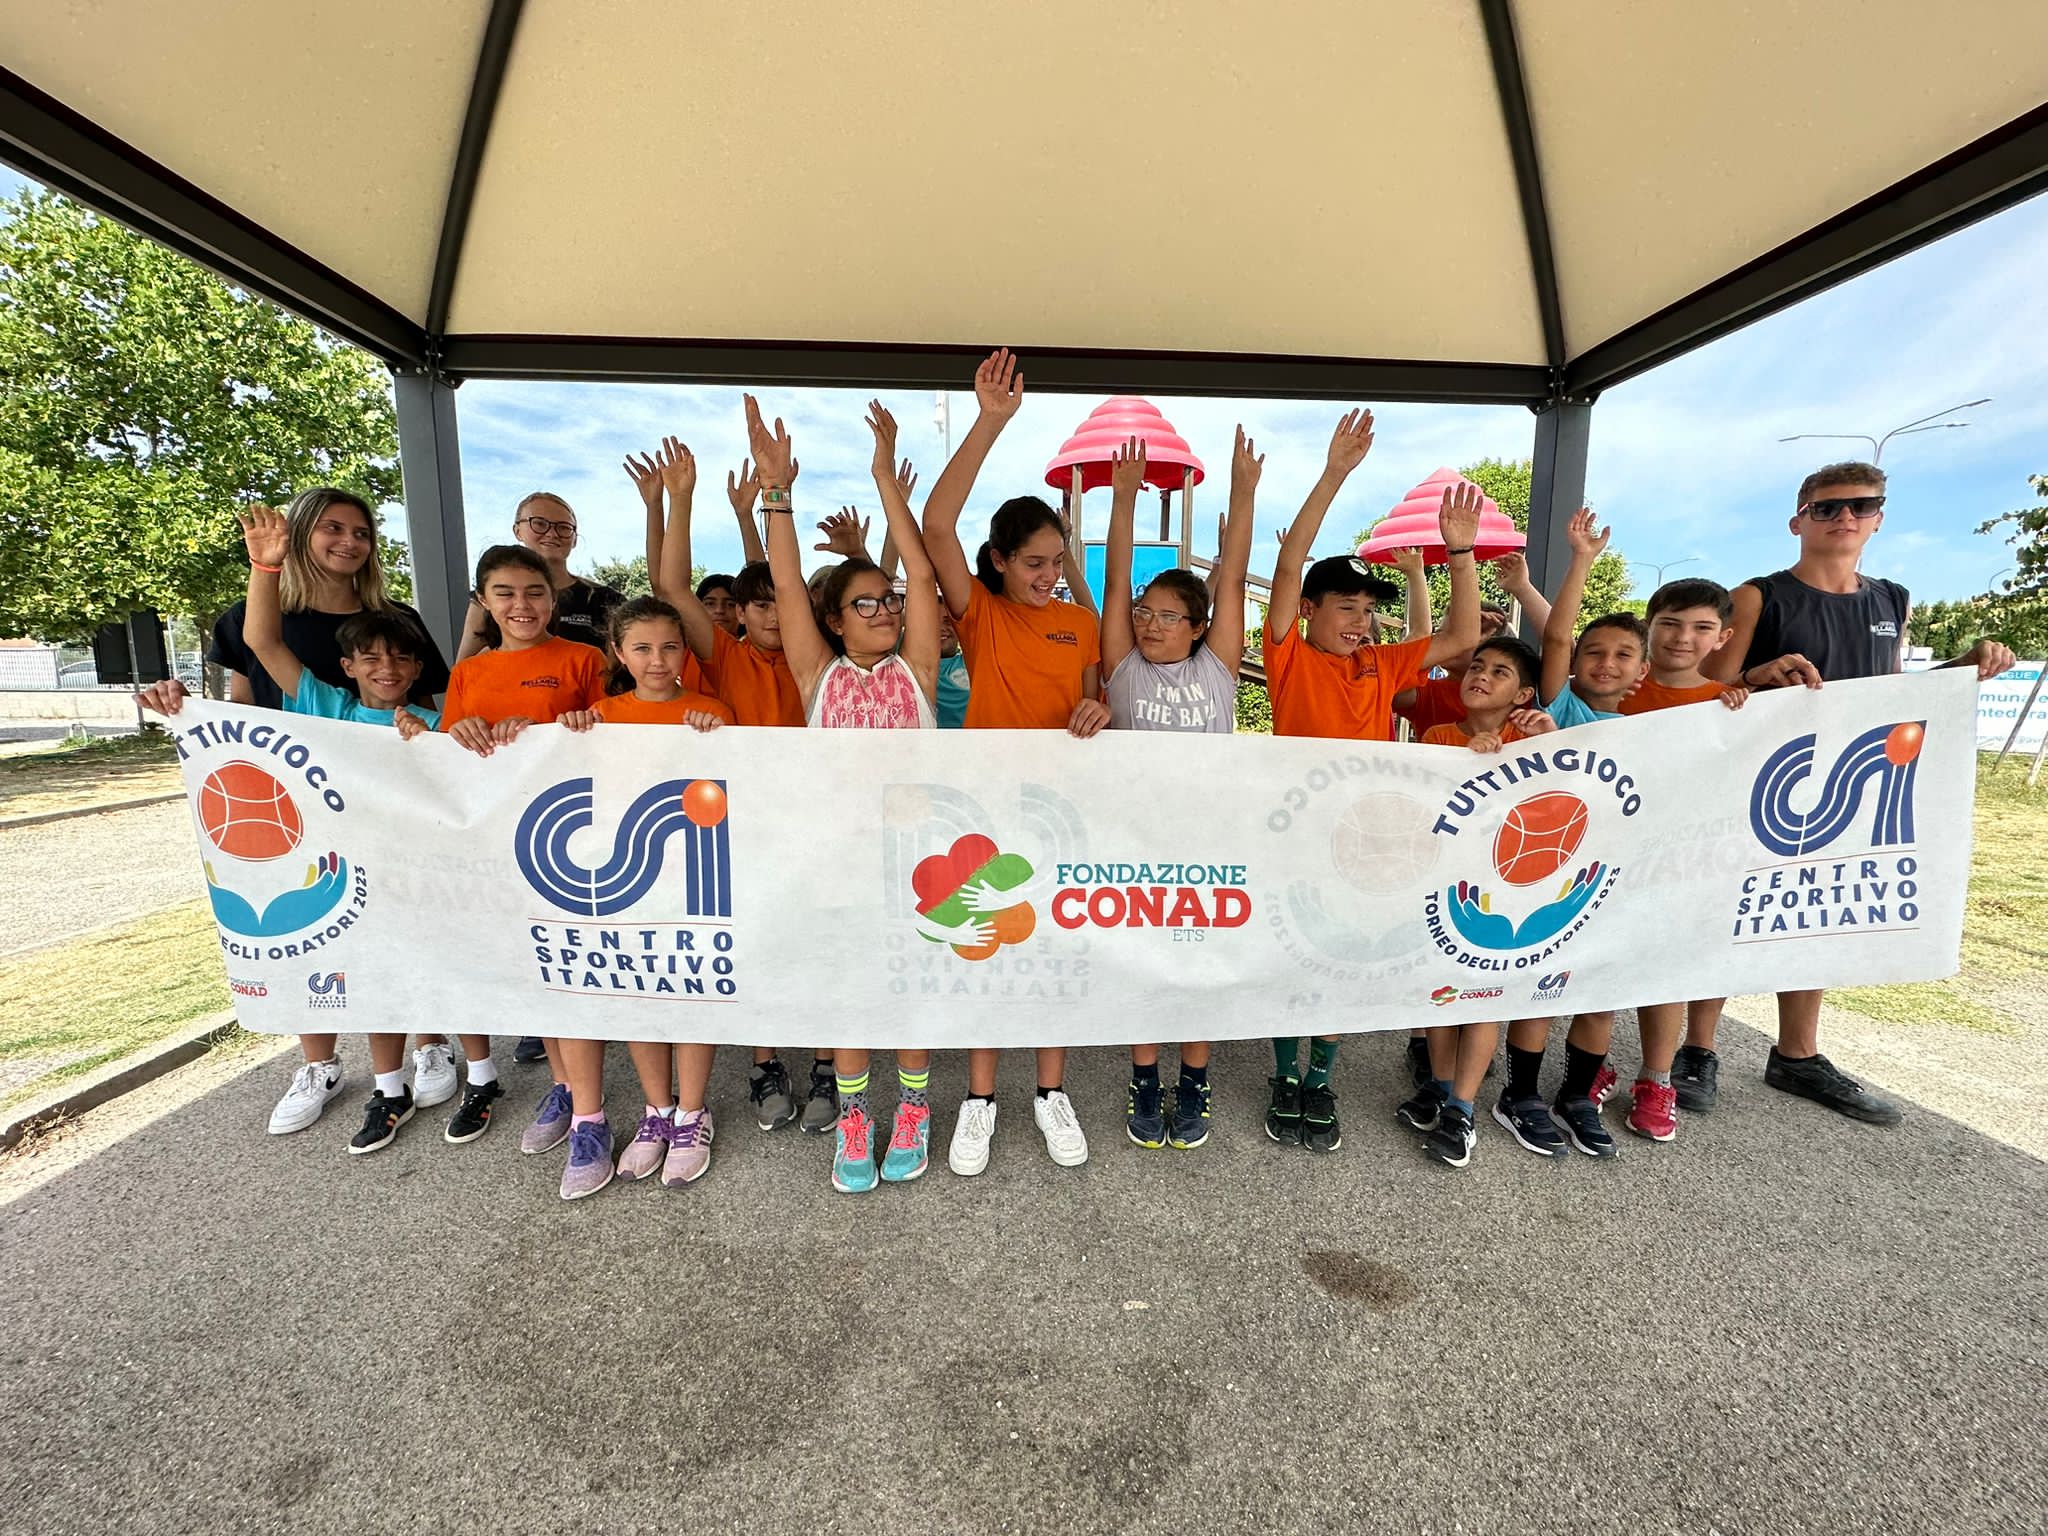 Dei bambini che alzano le mani tenendo uno striscione con i loghi di Tuttingioco, Csi e Fondazione Conas Ets